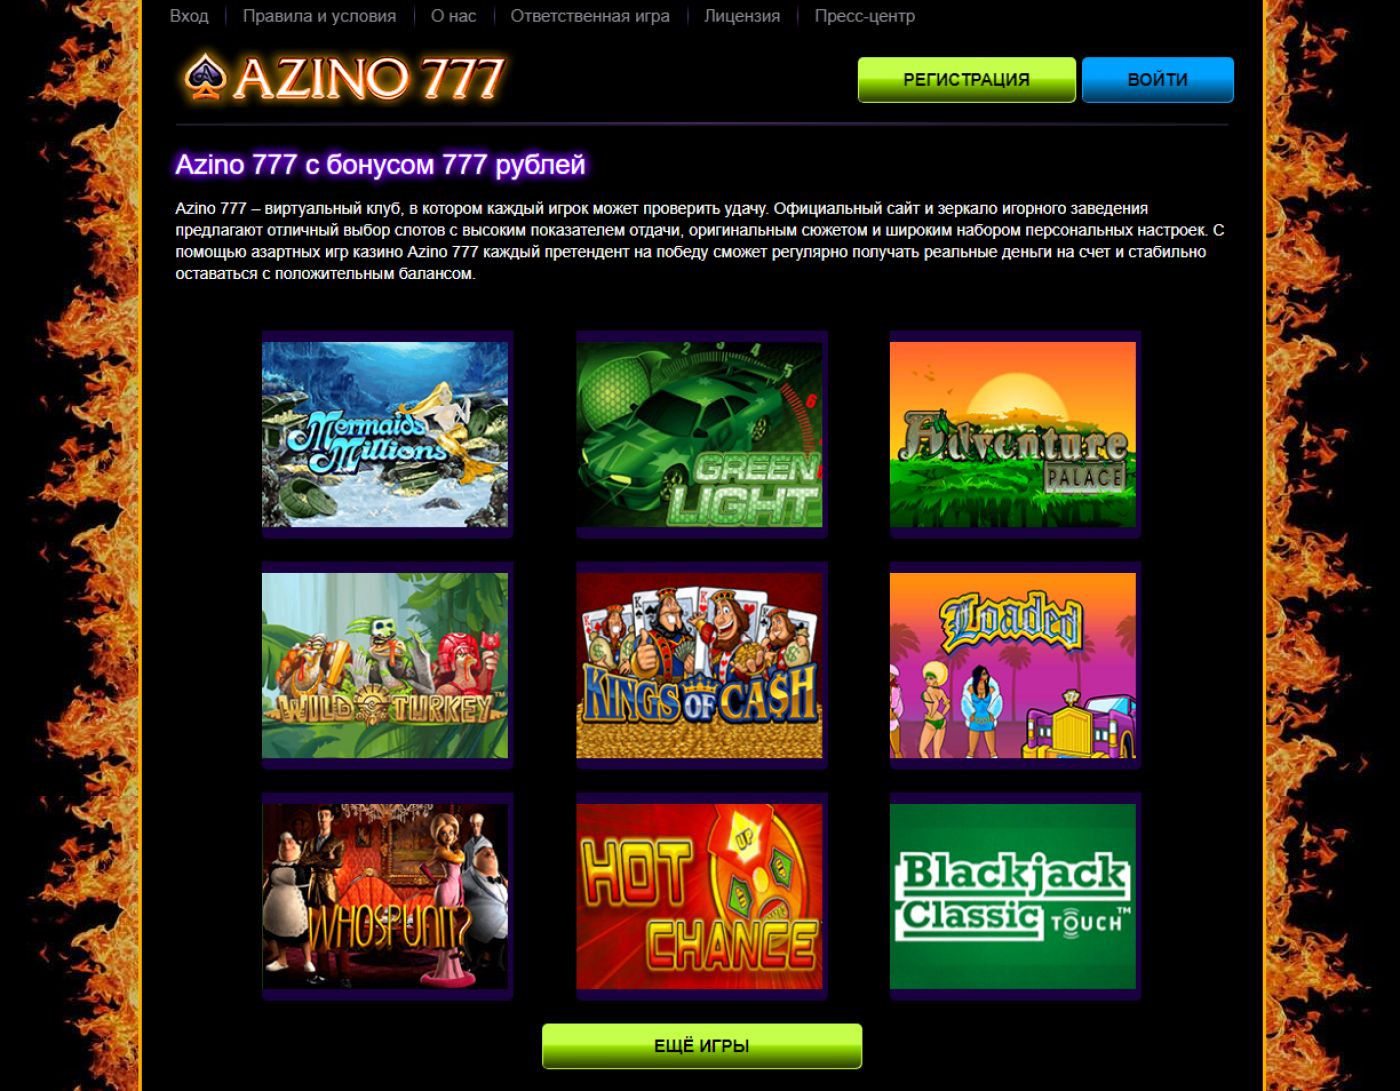 blog slots casino azino777 online com